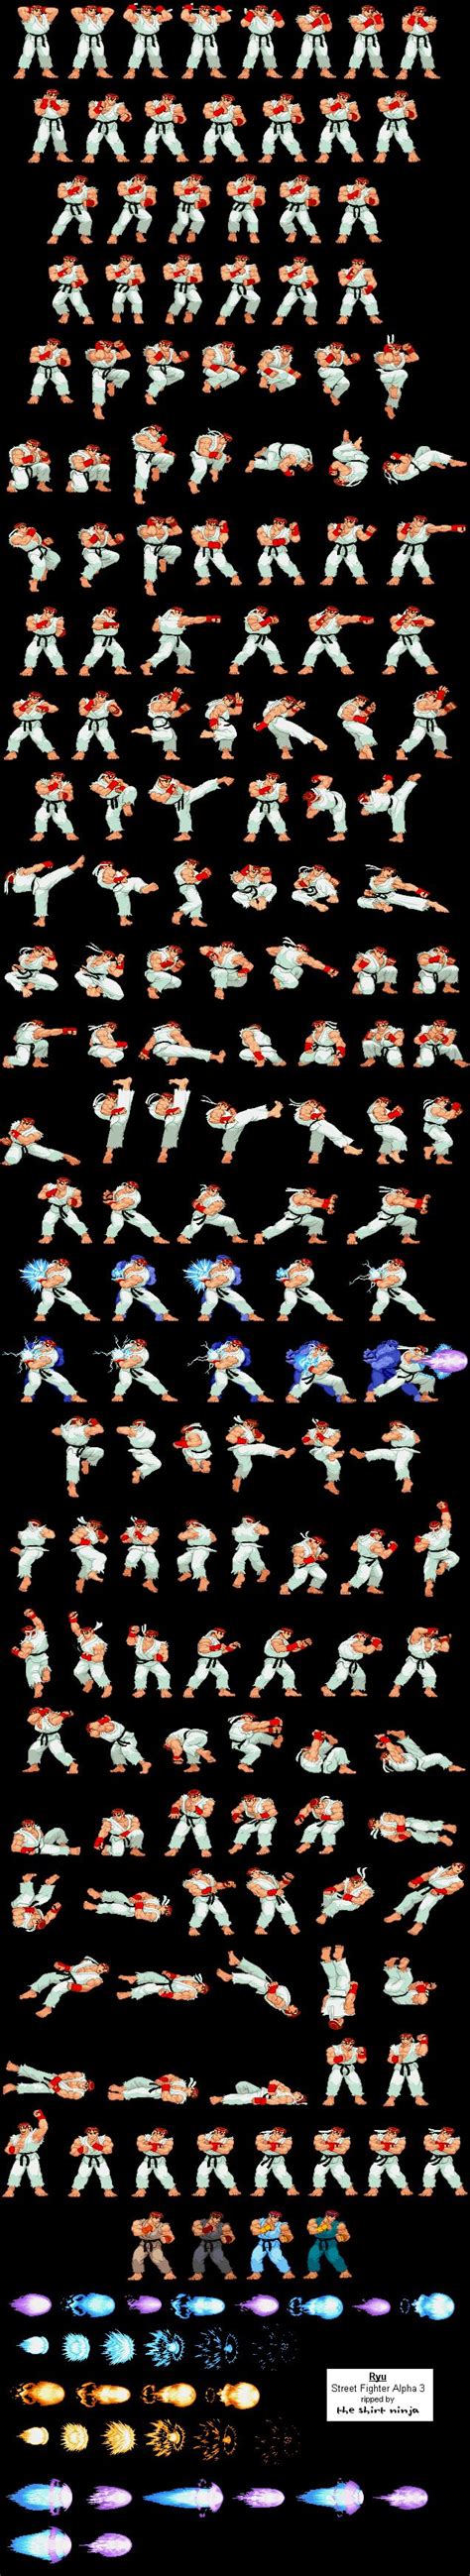 Megaman X Zero Sprite Sheet Street Fighter Ryu Sprite Sheet Gasealive